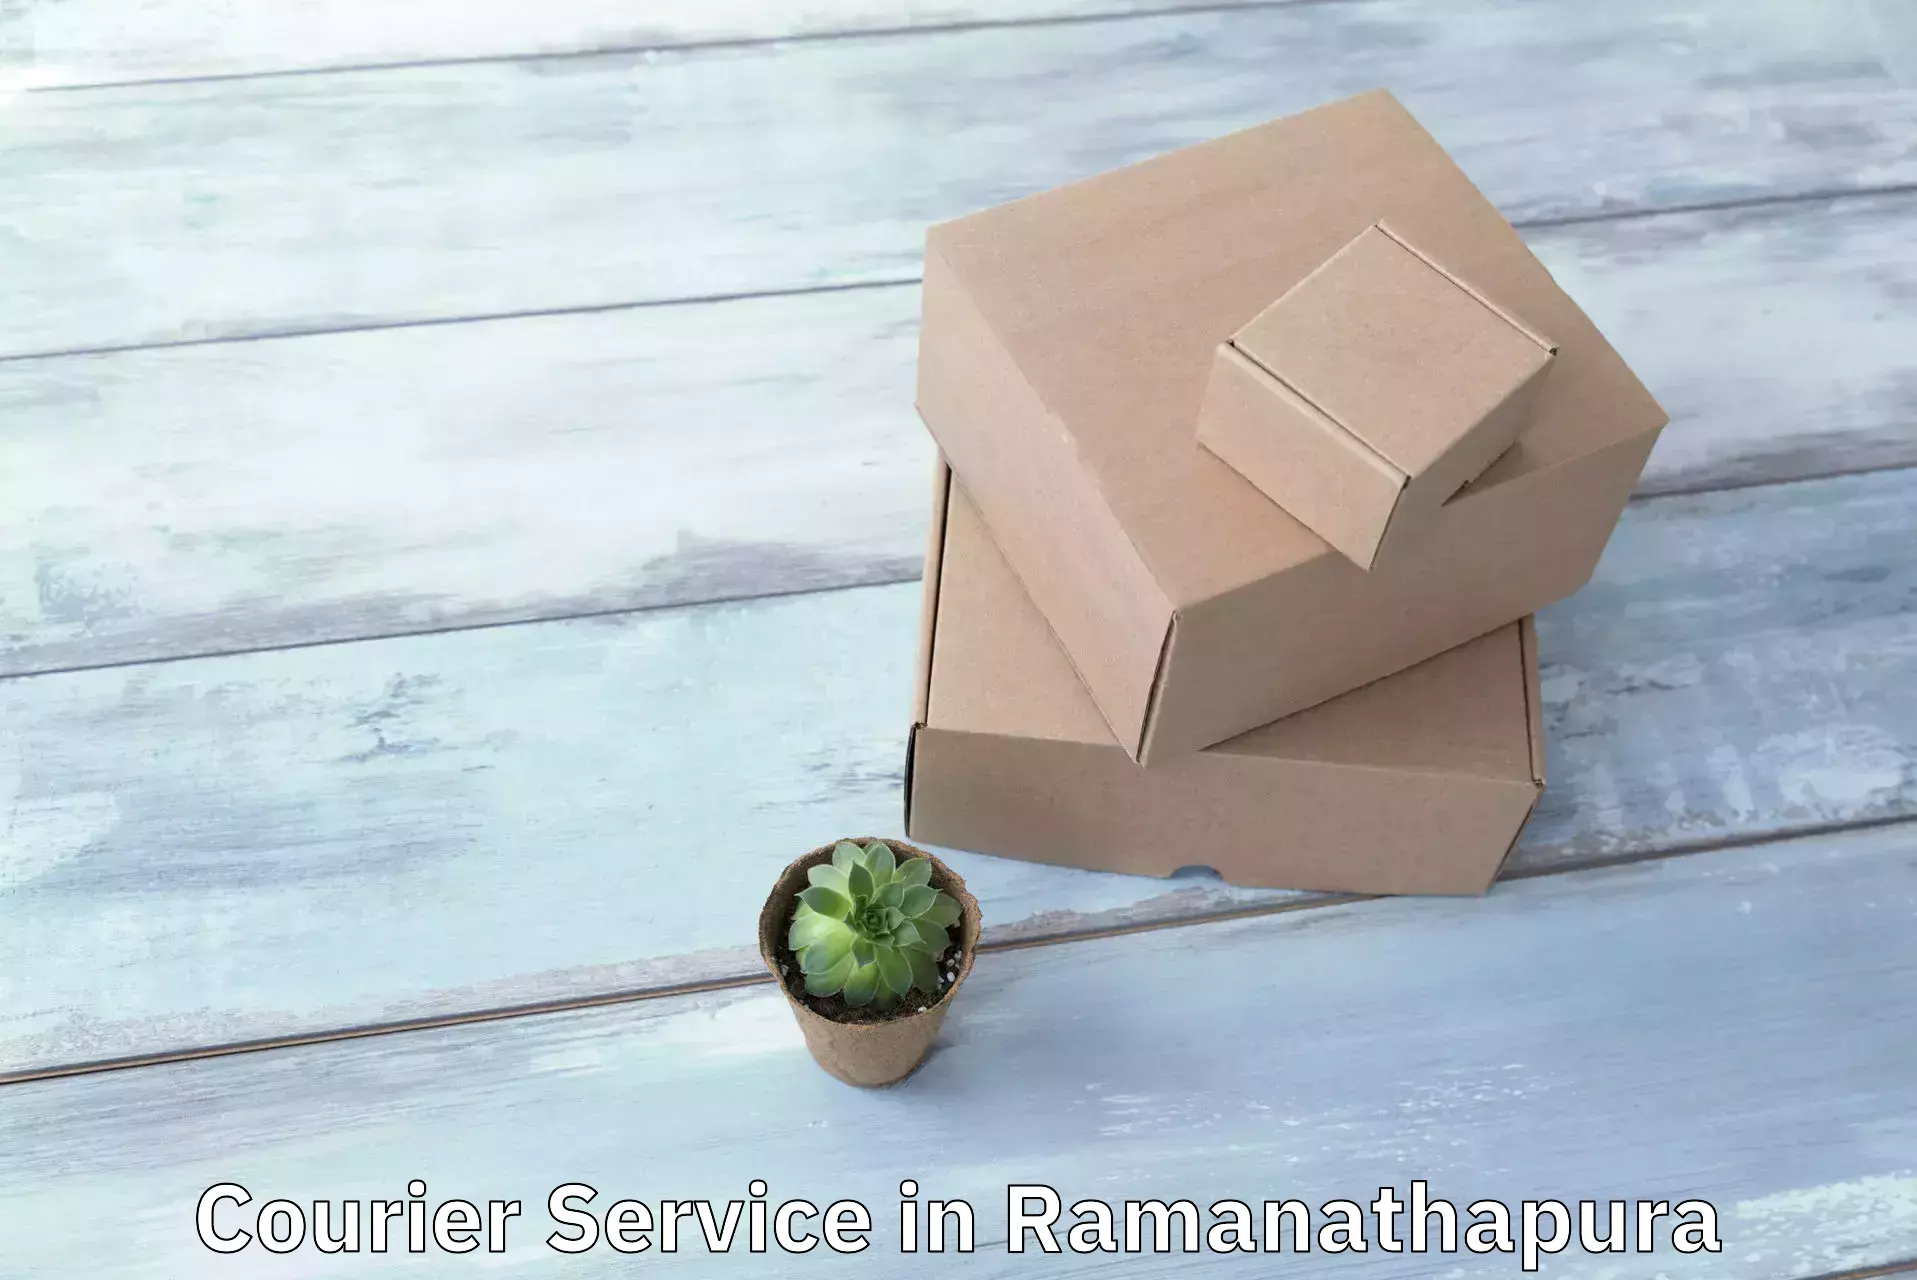 Quick booking process in Ramanathapura